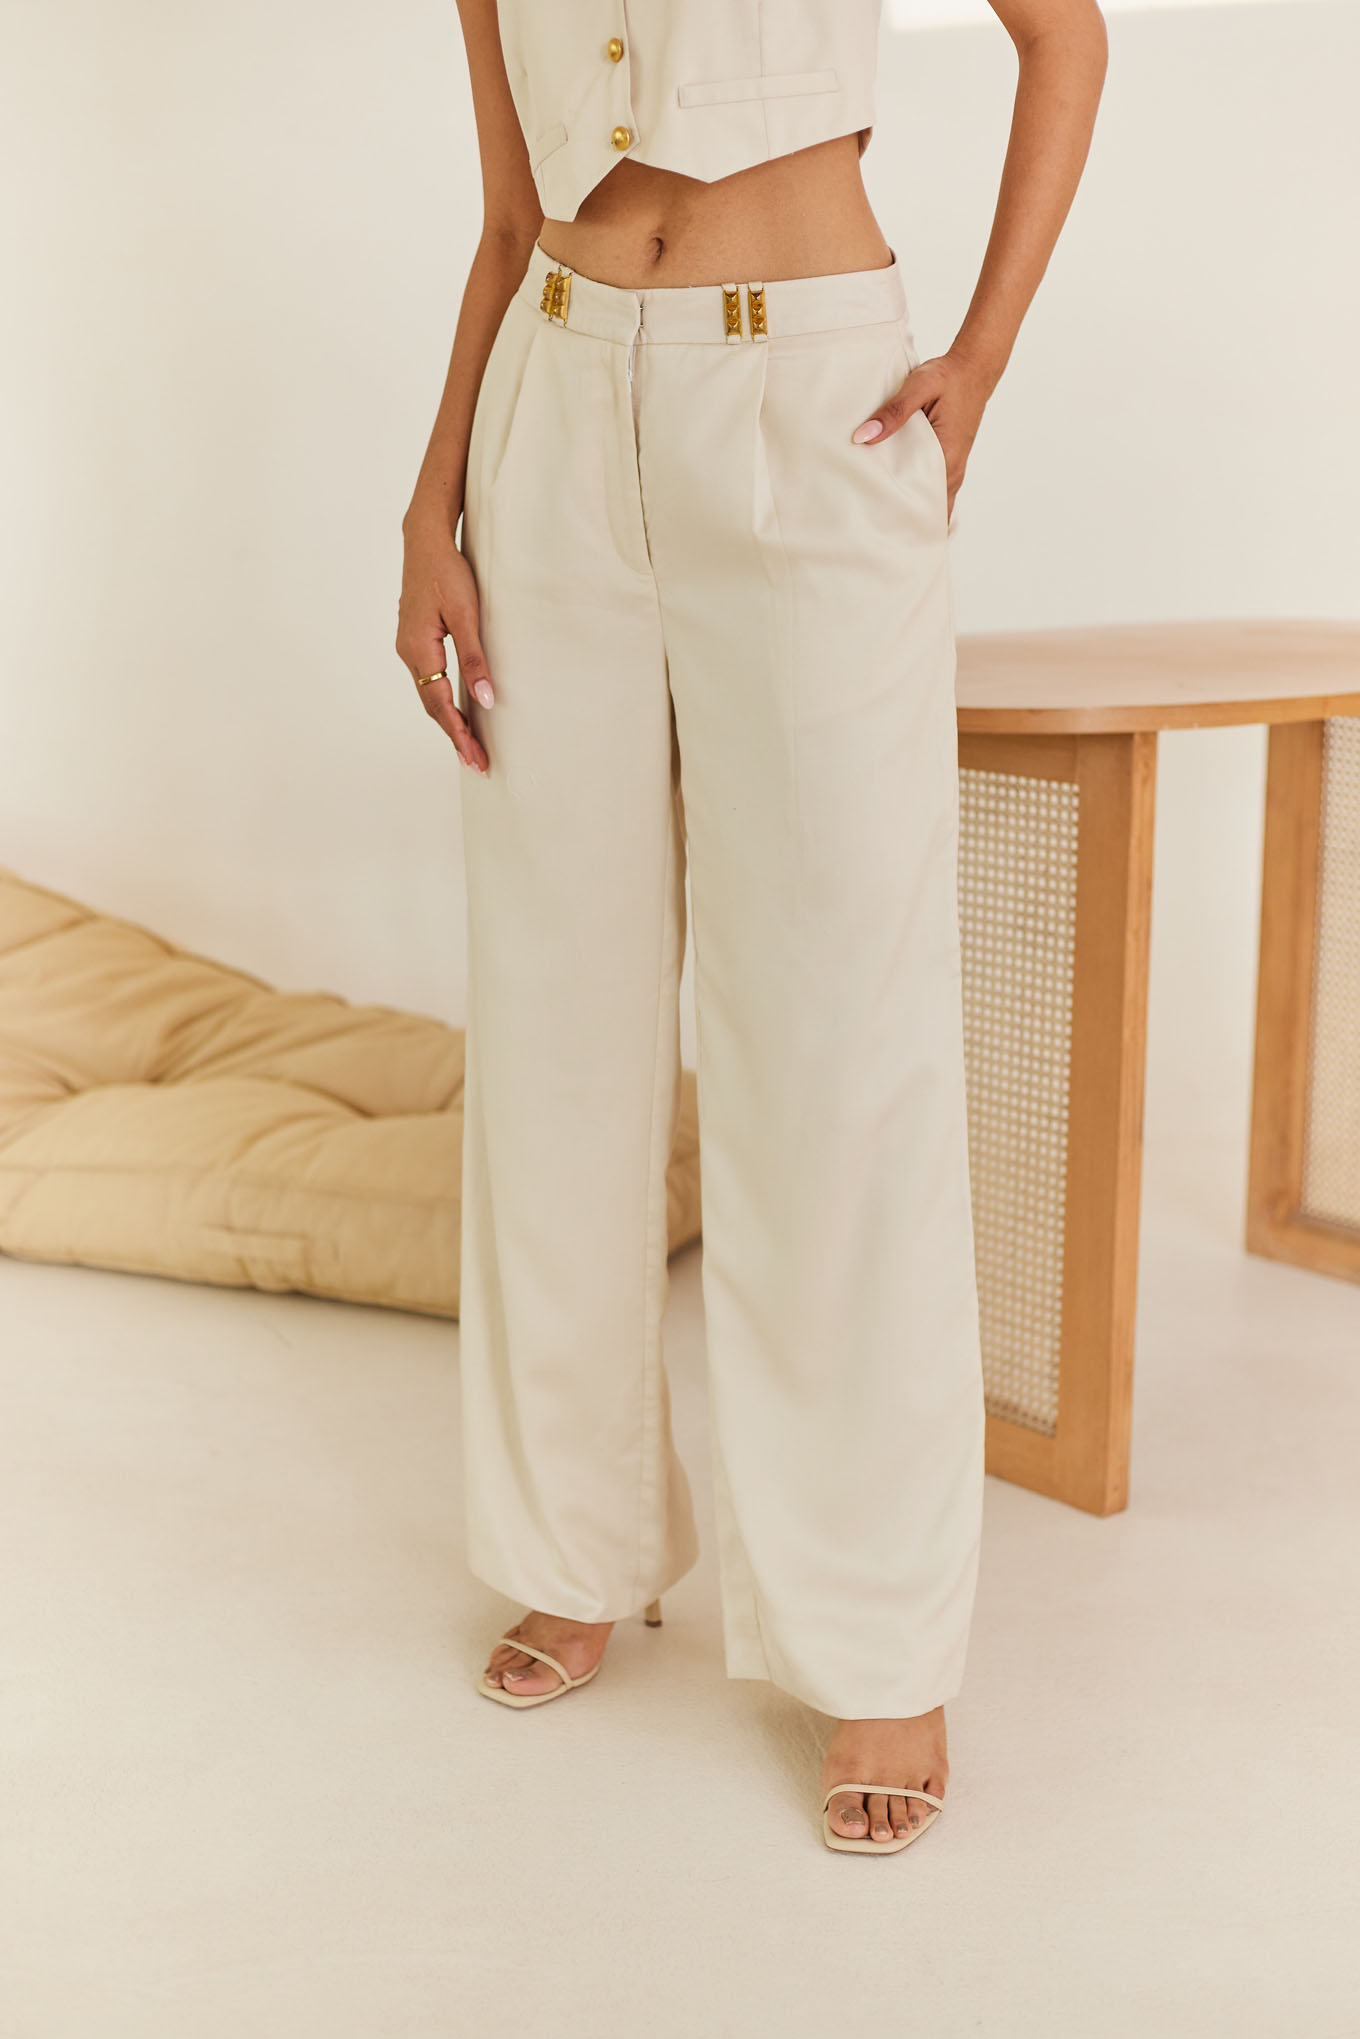 Smarty Pants women's cotton cream color floral print shorts & shirt night  suit.